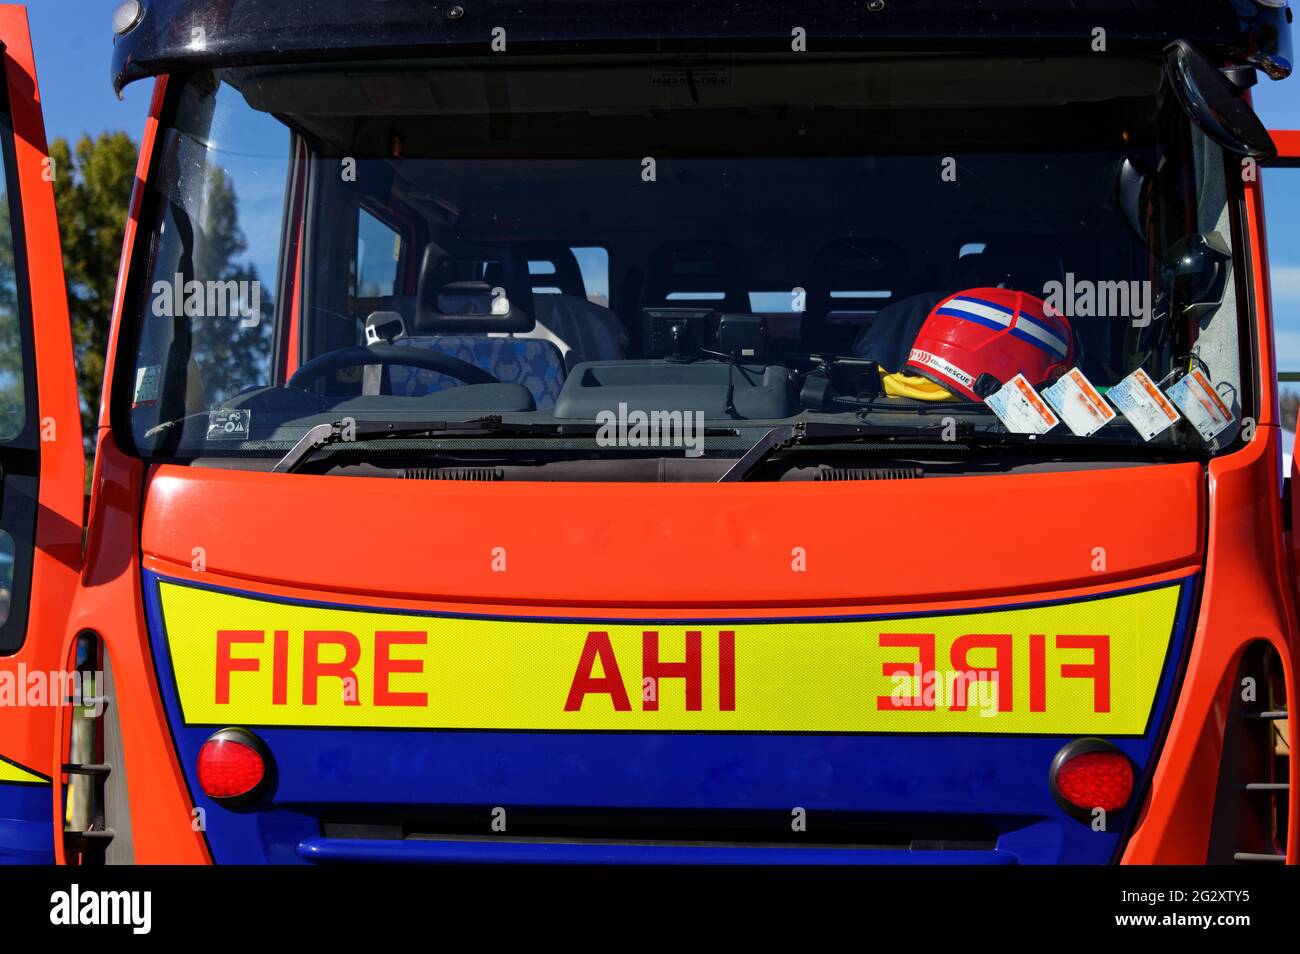 Un camion de pompiers néo-zélandais, un casque se trouve sur le tableau de bord et le mot Fire est imprimé à l'envers pour être lu dans un rétroviseur. Banque D'Images